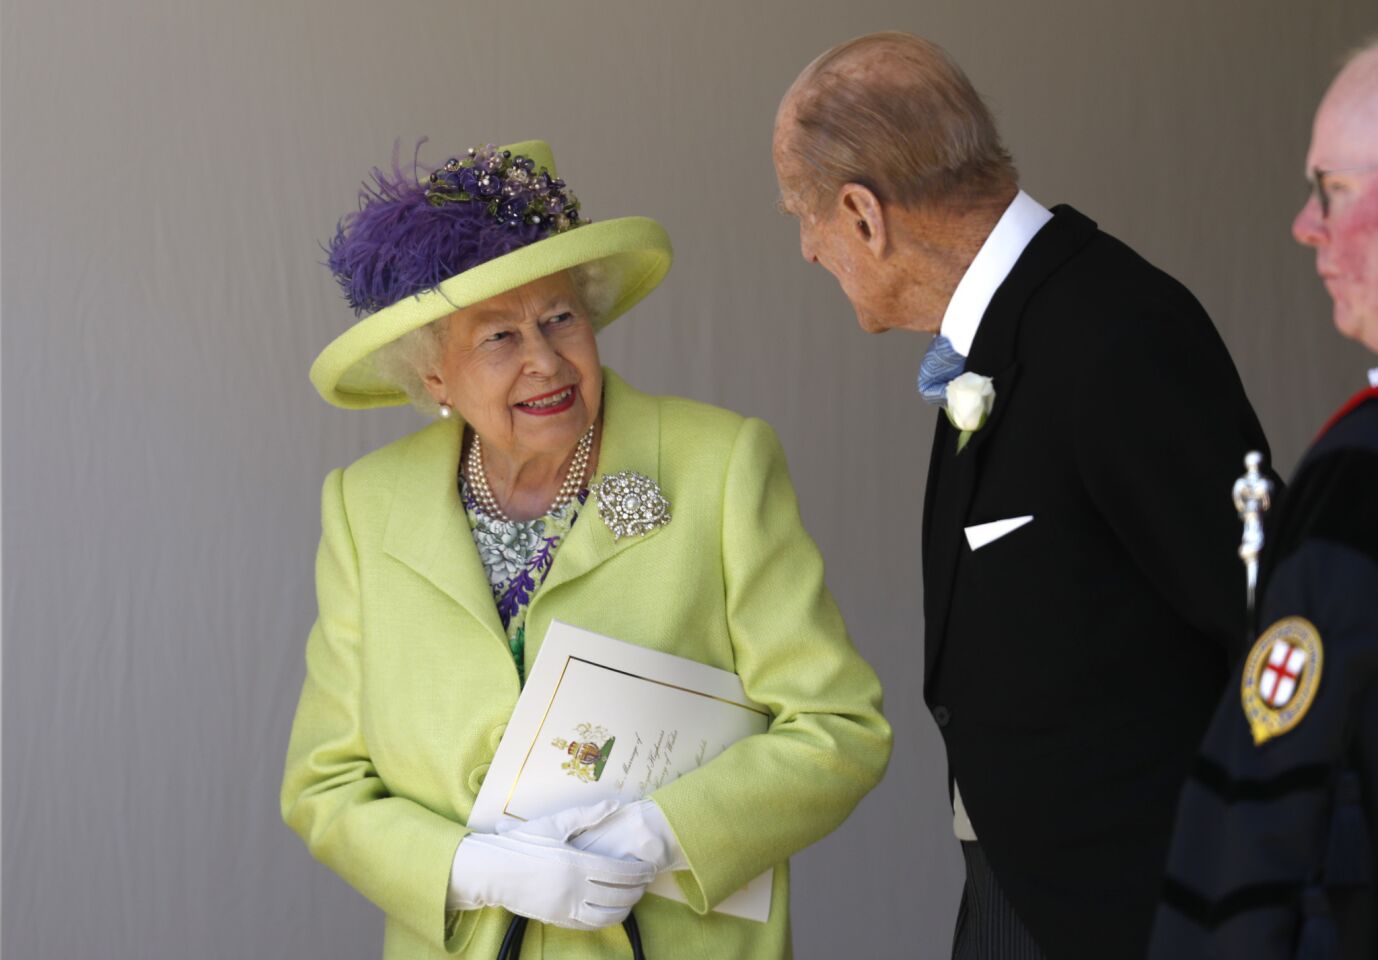 Royal wedding 2018 hats and fascinators